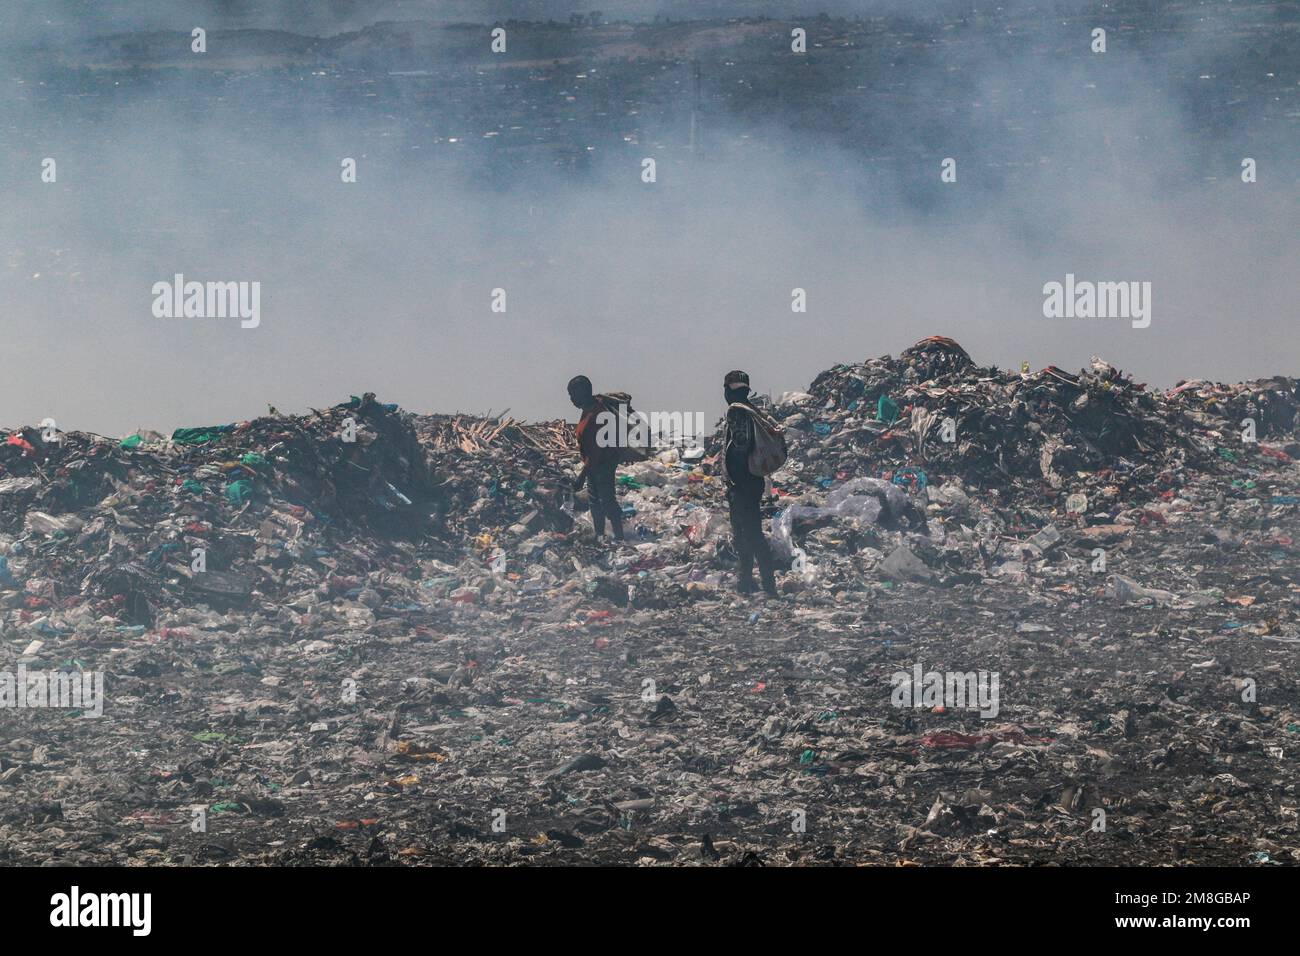 Müllsammler sammeln Abfälle, um sie in starkem Rauch zu recyceln, indem sie Müll auf dem Hauptlagerplatz von Nakuru verbrennen. Da Abfälle selten getrennt und stark mit allen Arten von Abfall vermischt werden, kann das Verbrennen potenziell giftige Dämpfe erzeugen, die ein Problem für die öffentliche Gesundheit darstellen und auch zum Klimawandel beitragen können. Gemeinden, die in der Nähe von Mülldeponien arbeiten und leben, wo Müll offen verbrannt wird, sind dem Risiko von Atemwegserkrankungen und Krebs ausgesetzt. Frauen, die diesen Dämpfen ausgesetzt sind, können unter reproduktiven Gesundheitsproblemen leiden. (Foto: James Wakibia/SOPA Images/Sipa USA) Stockfoto